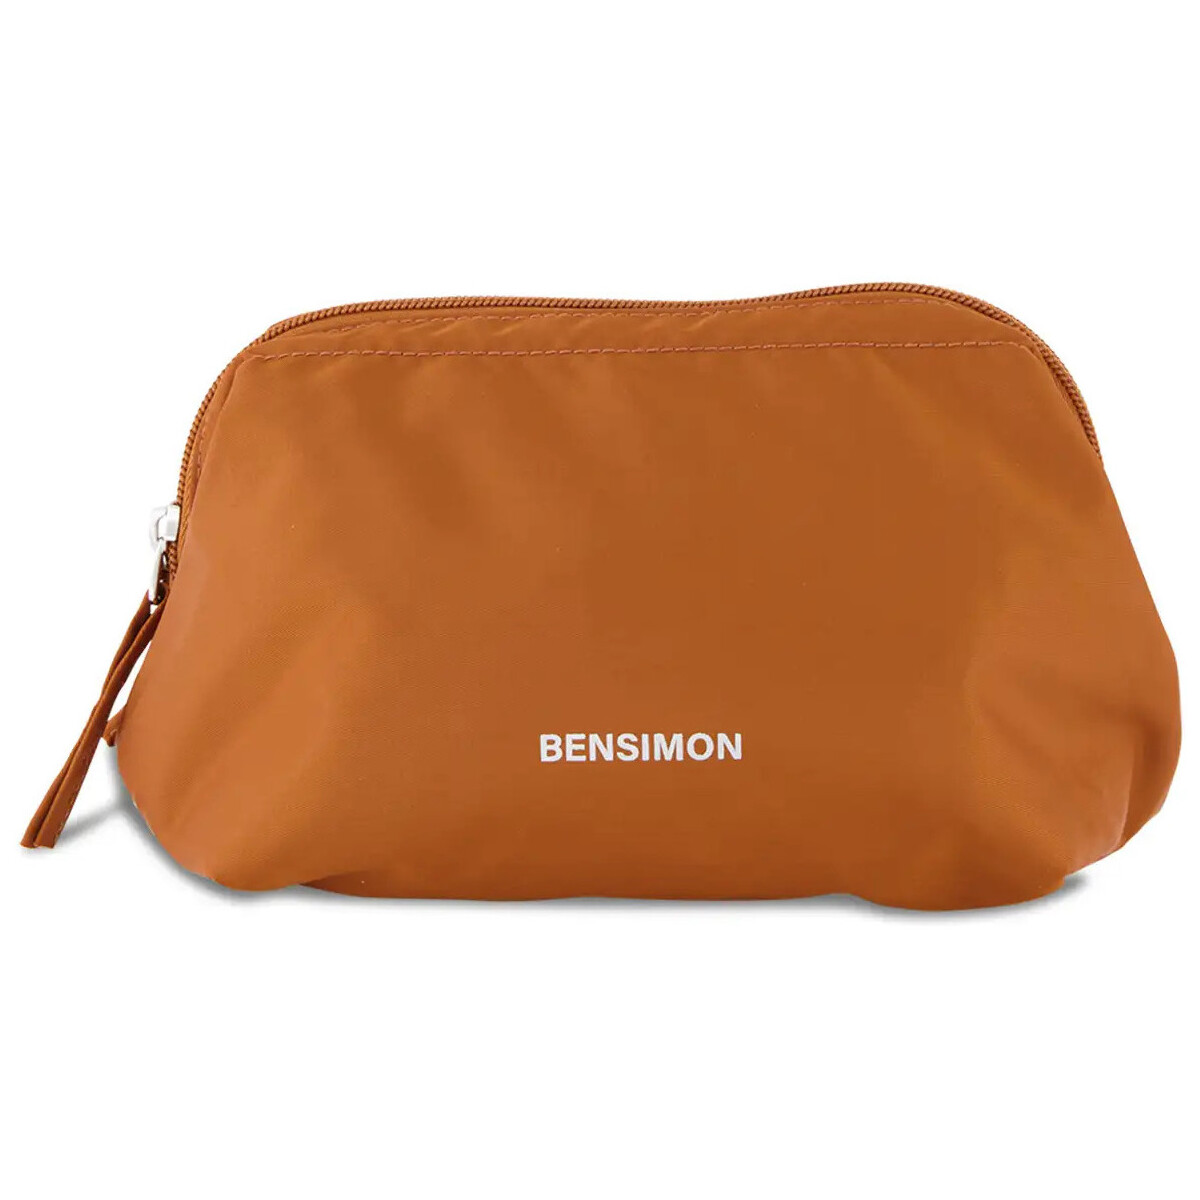 Bensimon Orange Pochette - BEAUTY WALLET S - Flamme G7sVWgNT